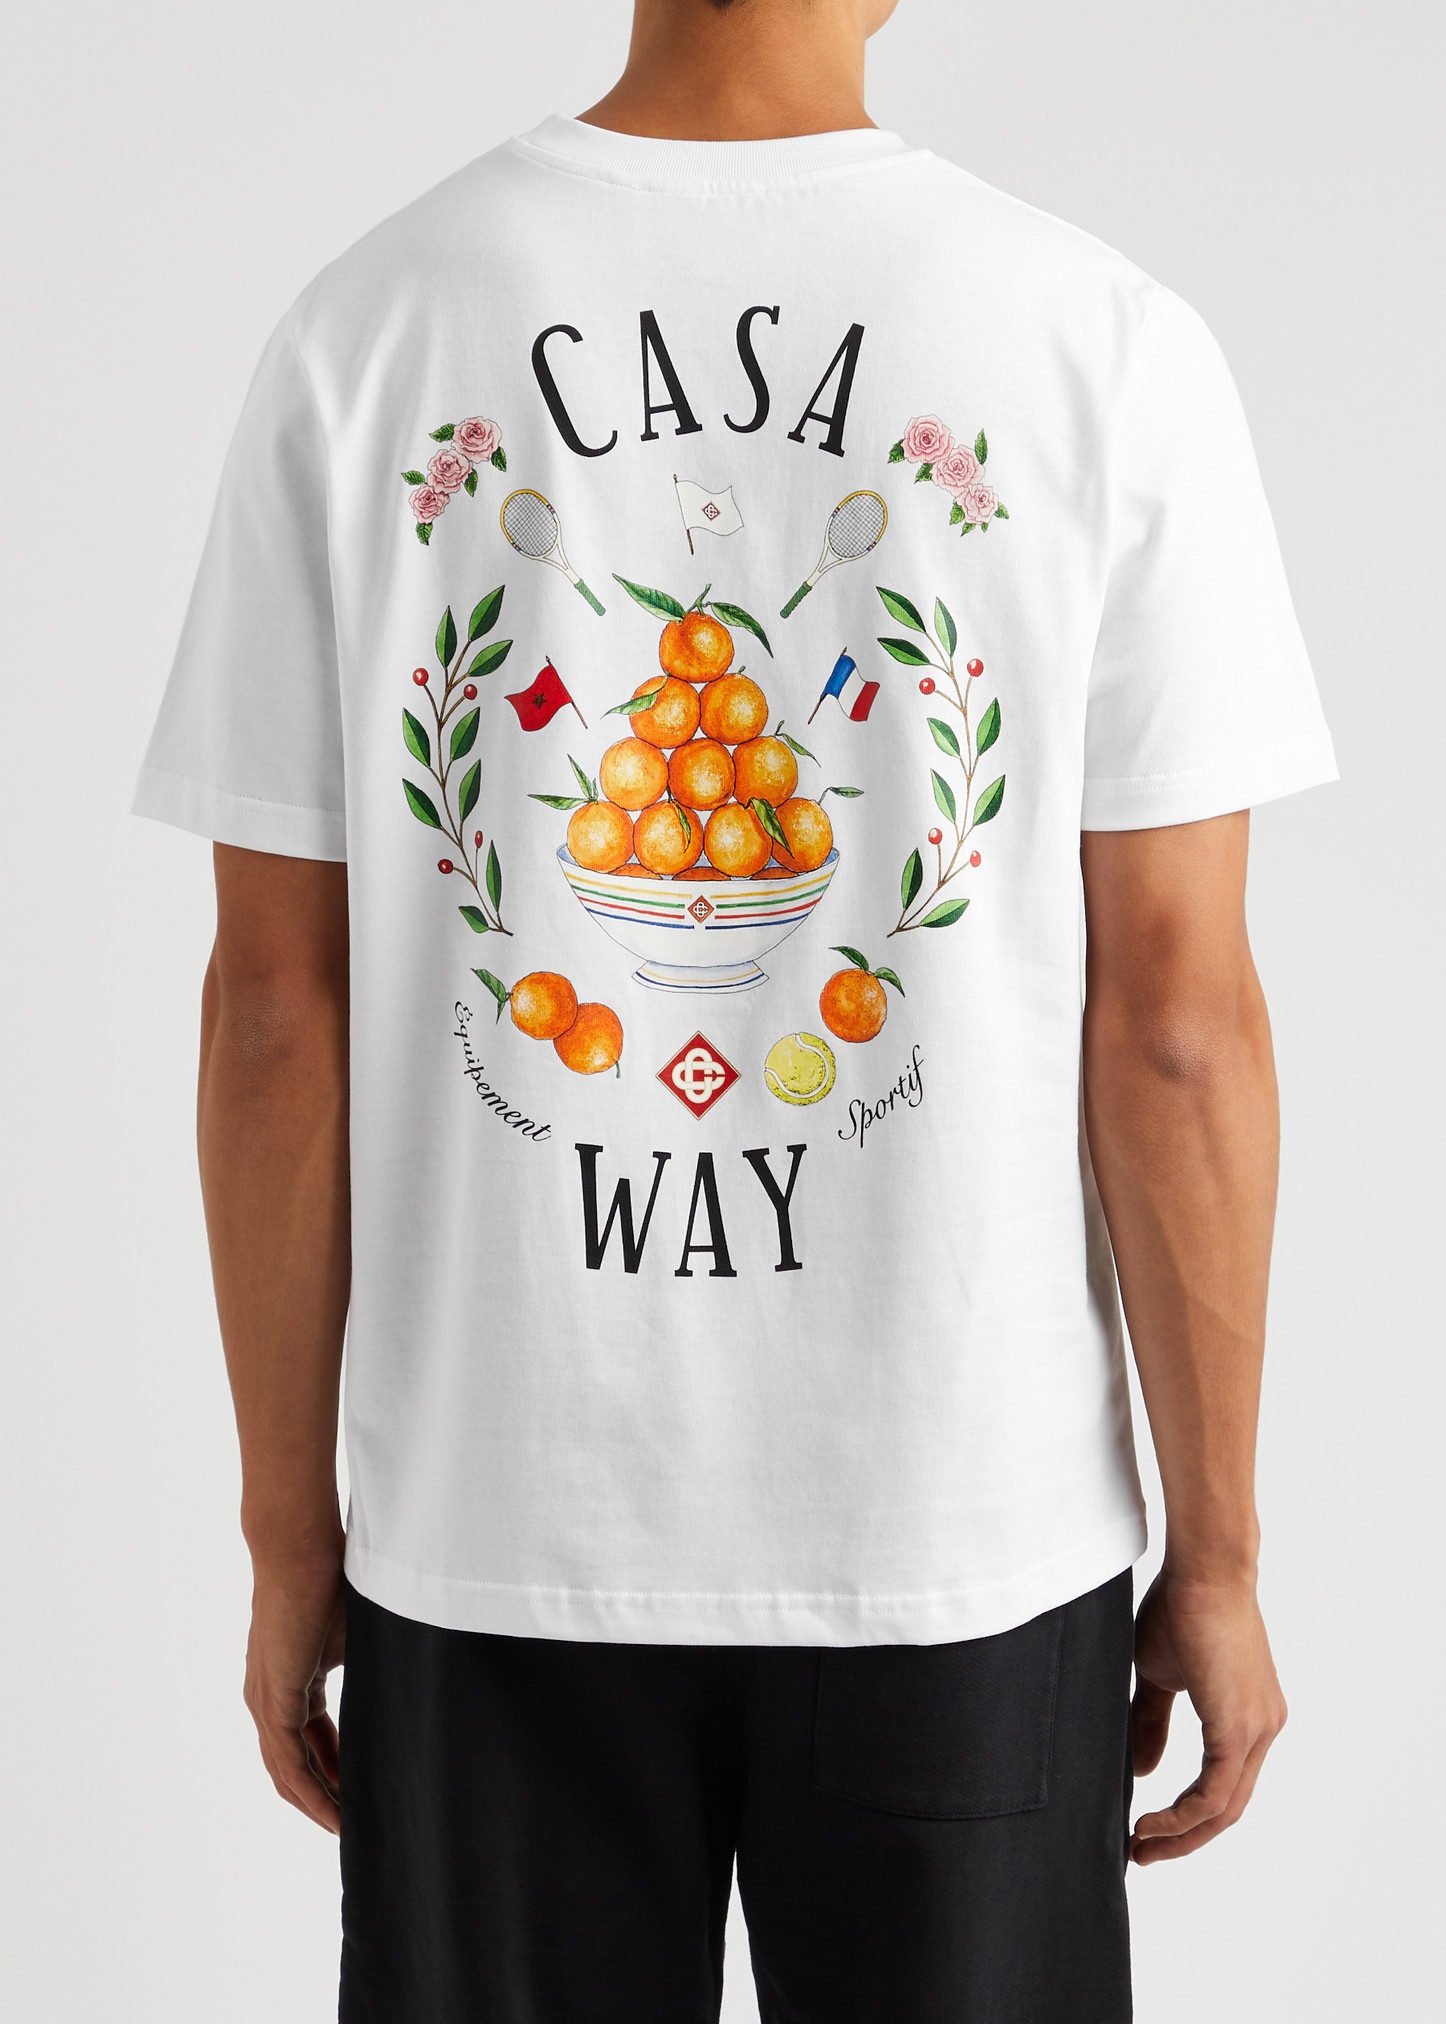 Casa Way printed cotton T-shirt - 3